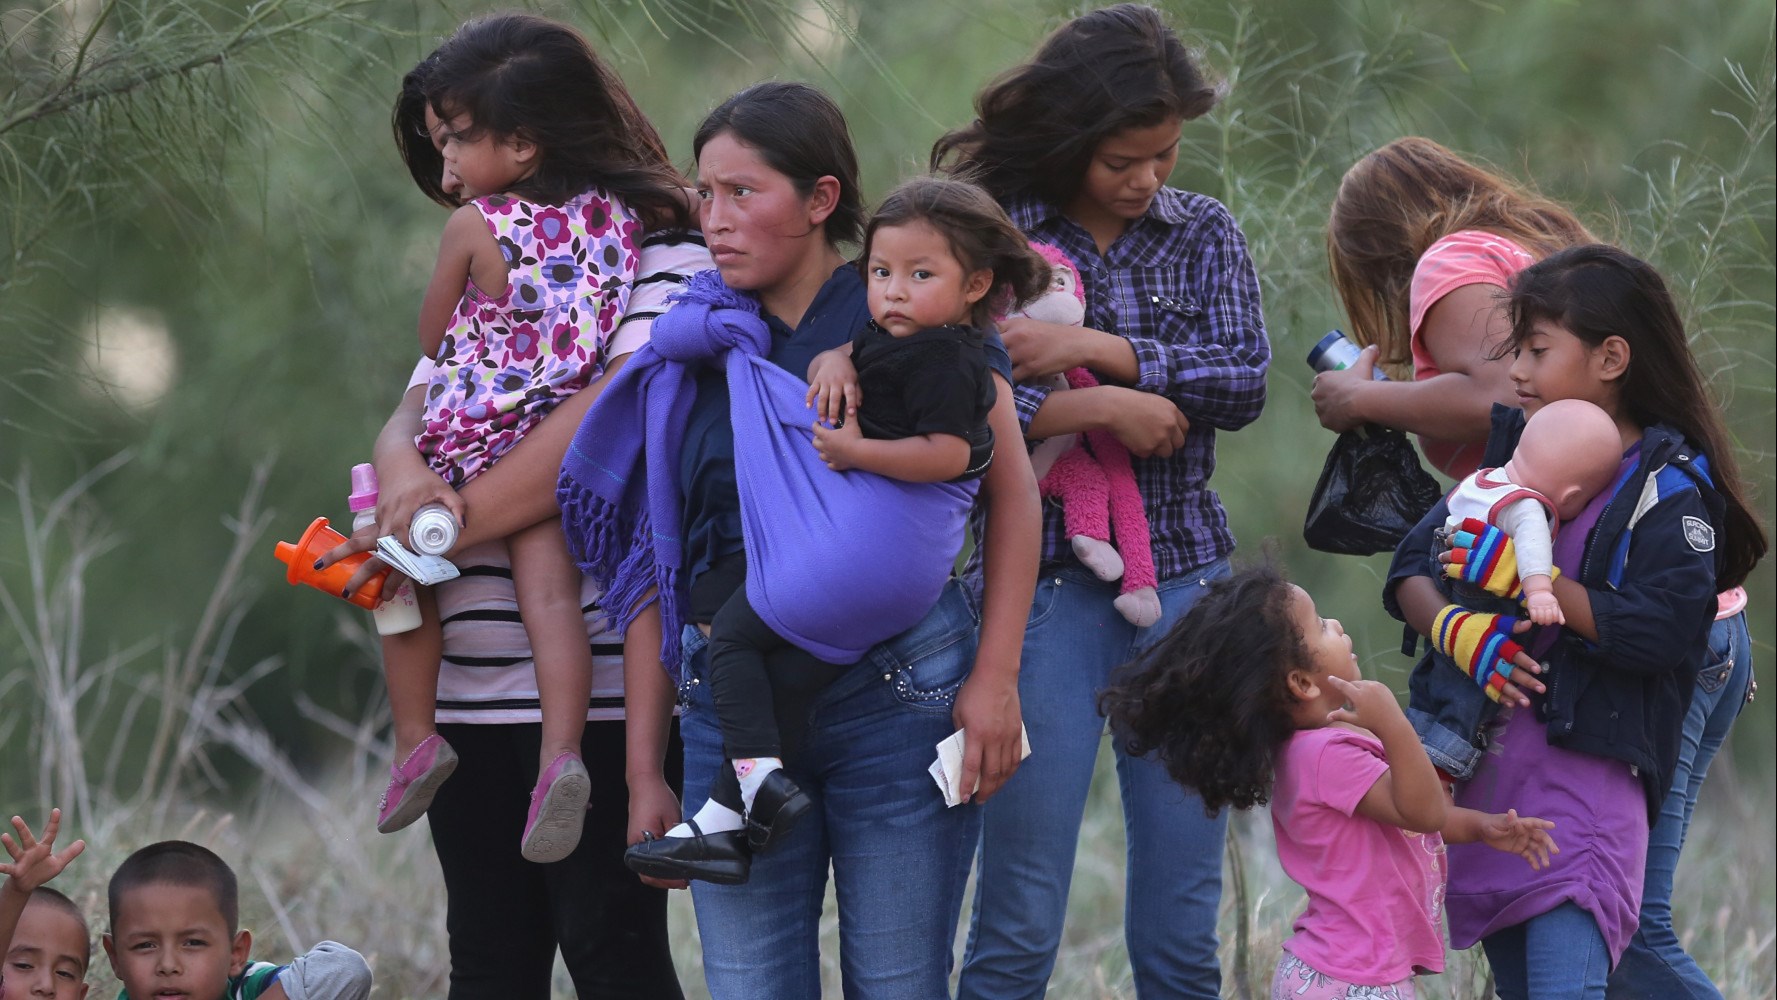 ΗΠΑ: Ο Τραμπ μελετά την πρόταση να χωρίζονται οι μετανάστριες από τα παιδιά τους